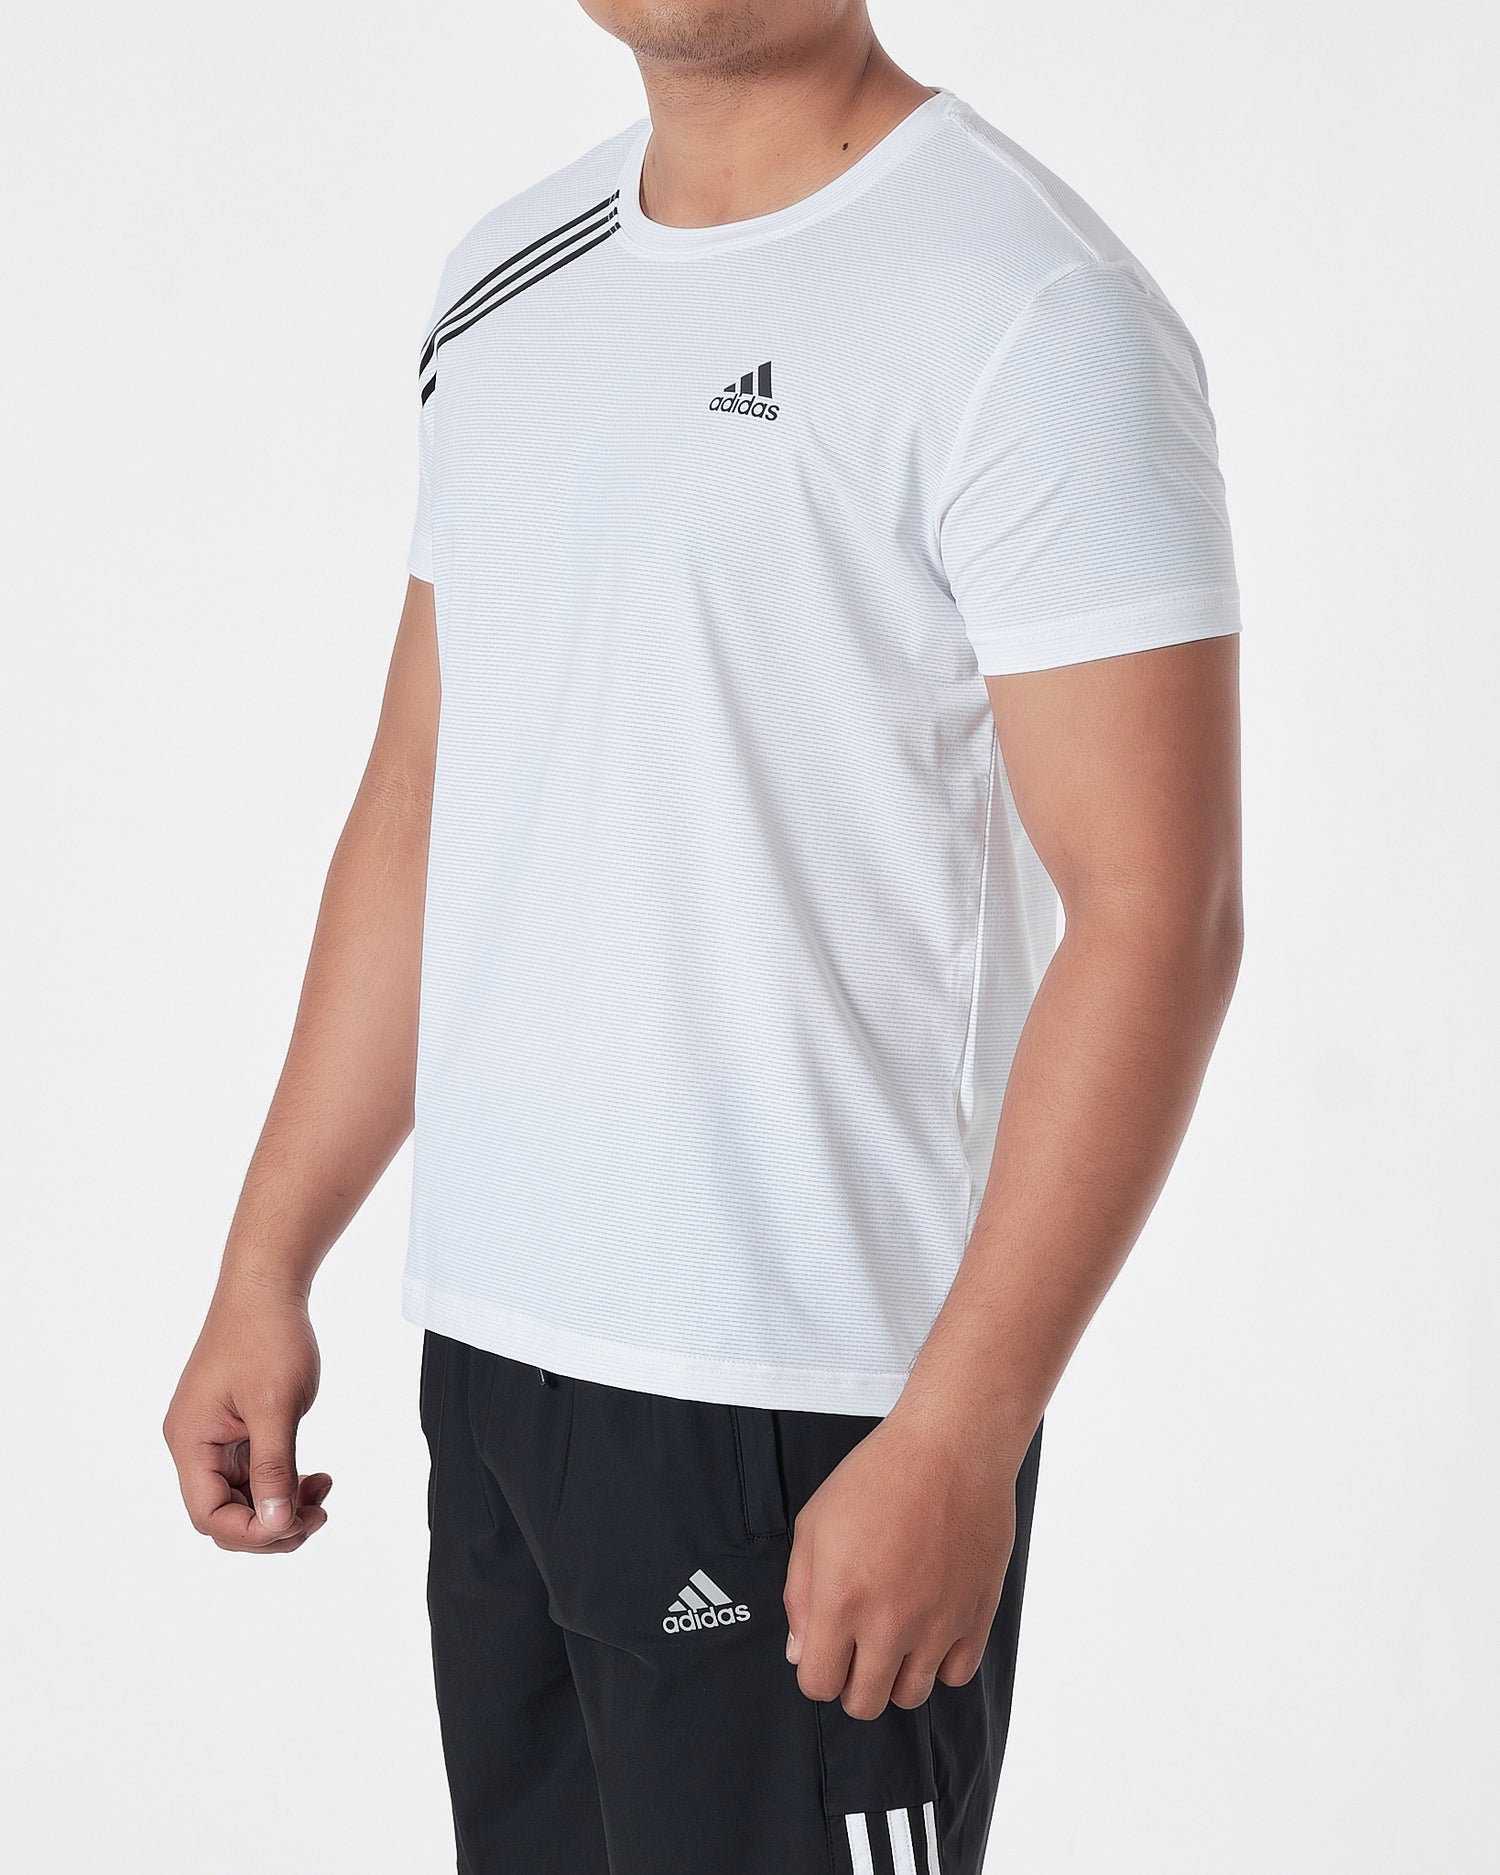 ADI Logo Embroidered Men White Sport T-Shirt 14.90